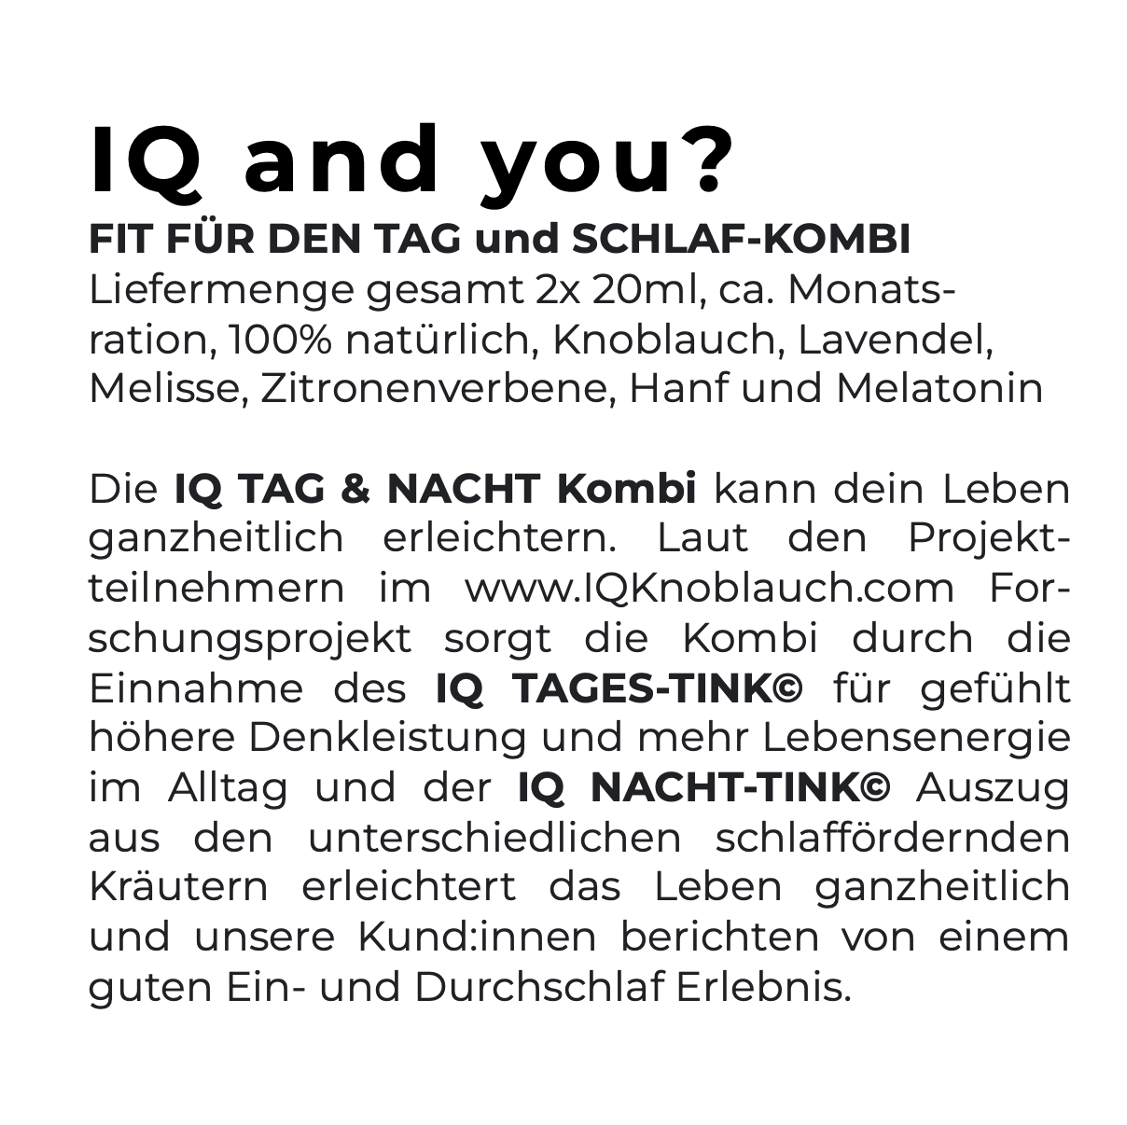 IQ-TINK.com - Der erstmals praktisch wasserlösliche Knoblauch Auszug mit einzigartiger Wirkung!